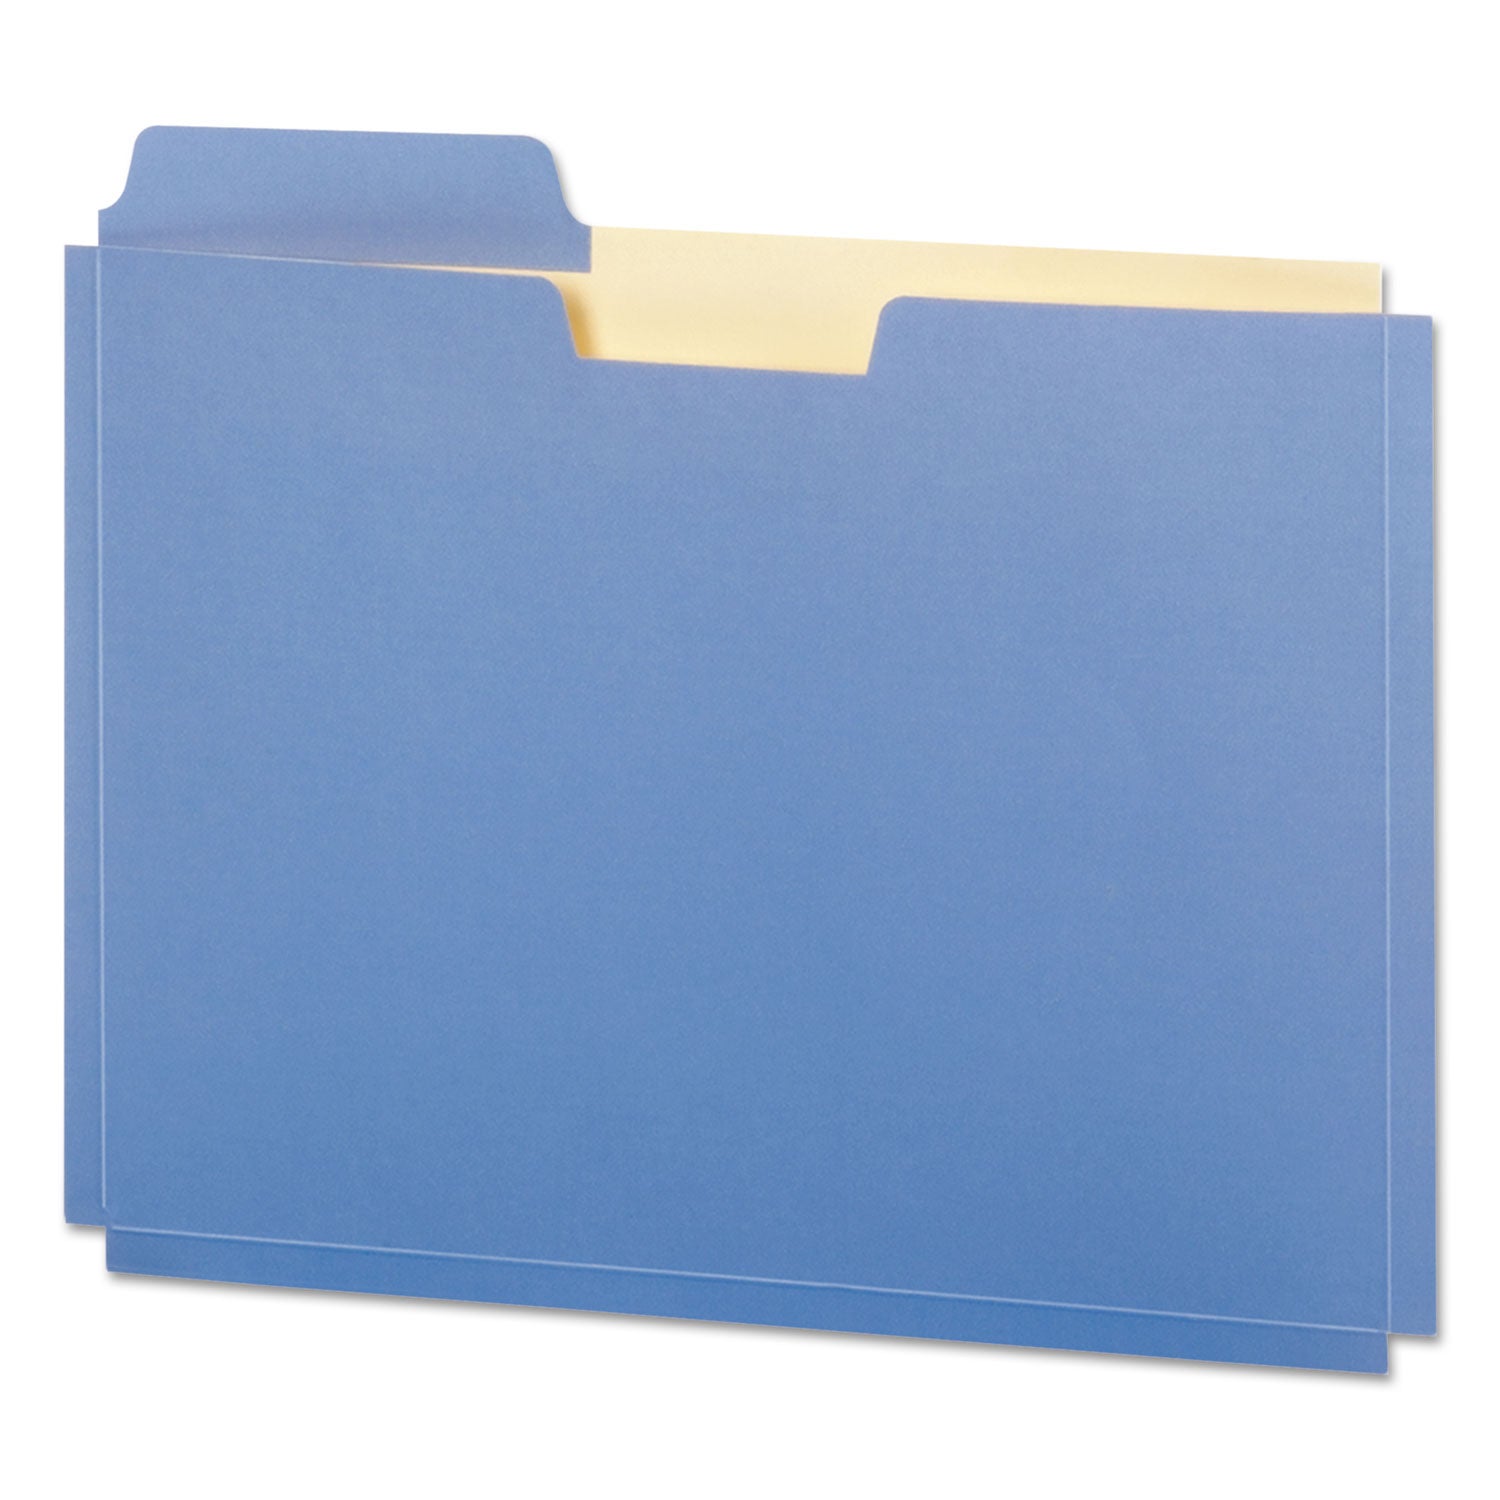 file-folder-pocket-075-expansion-letter-size-assorted-colors-10-pack_pfxfp153l10asst - 1